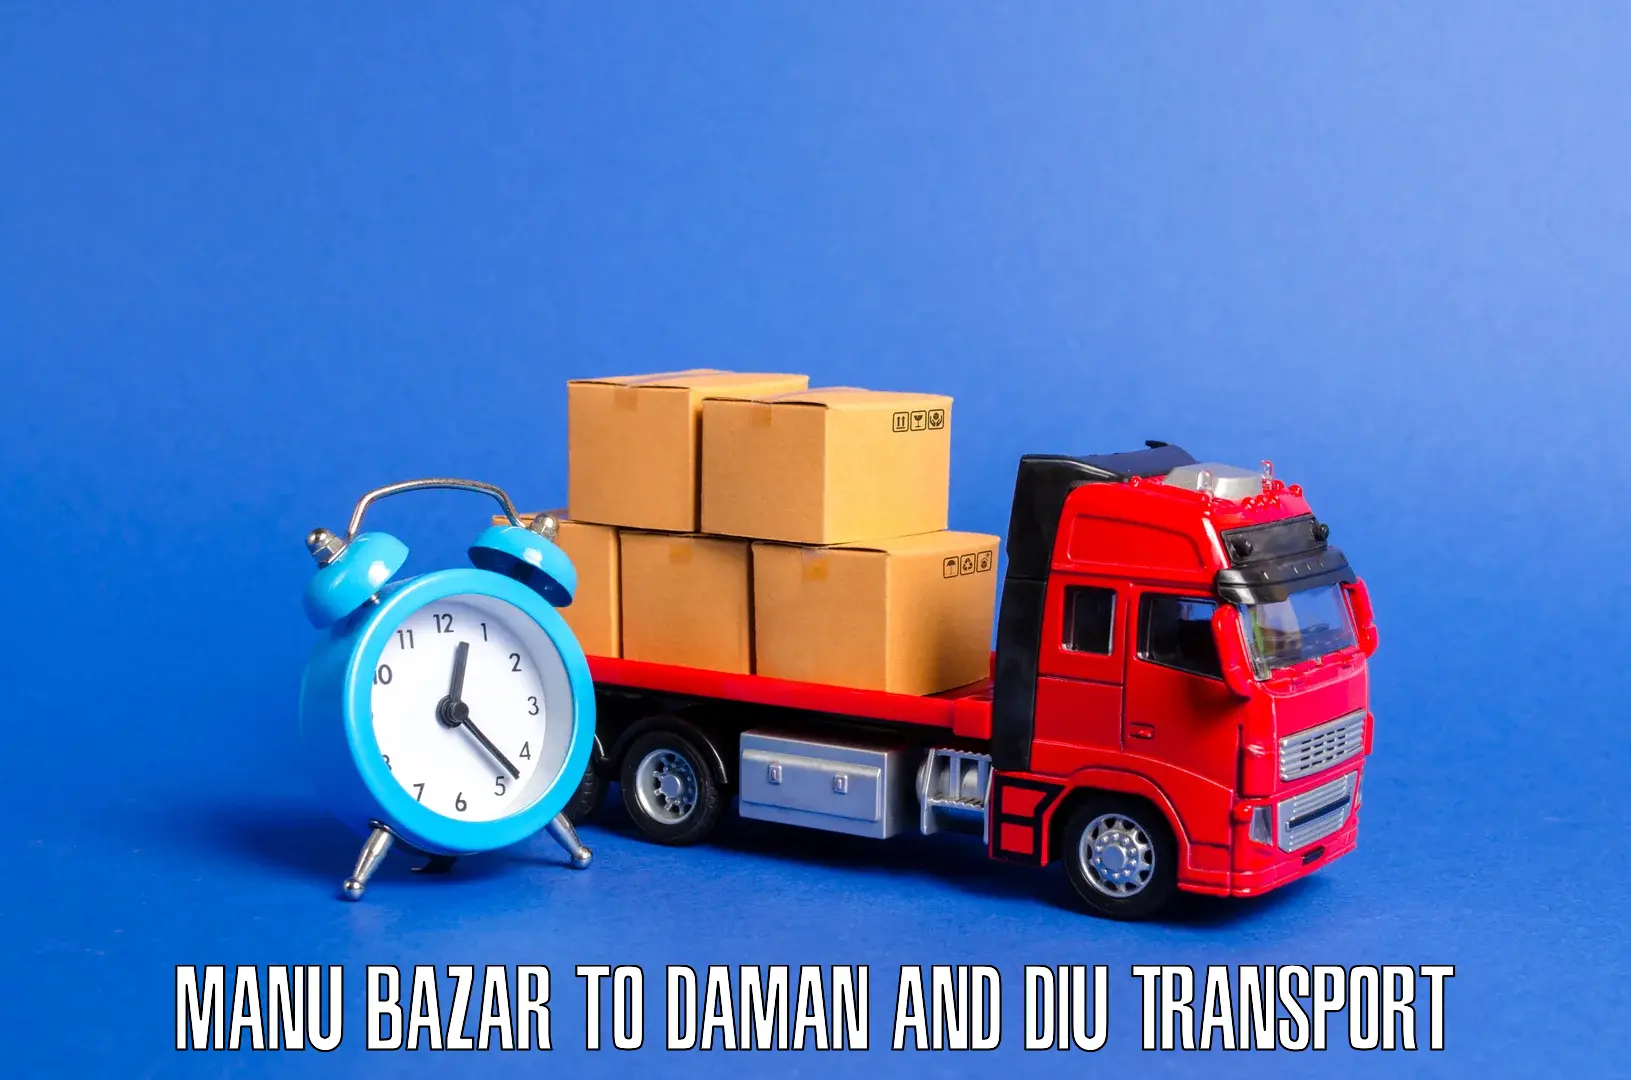 Air freight transport services Manu Bazar to Daman